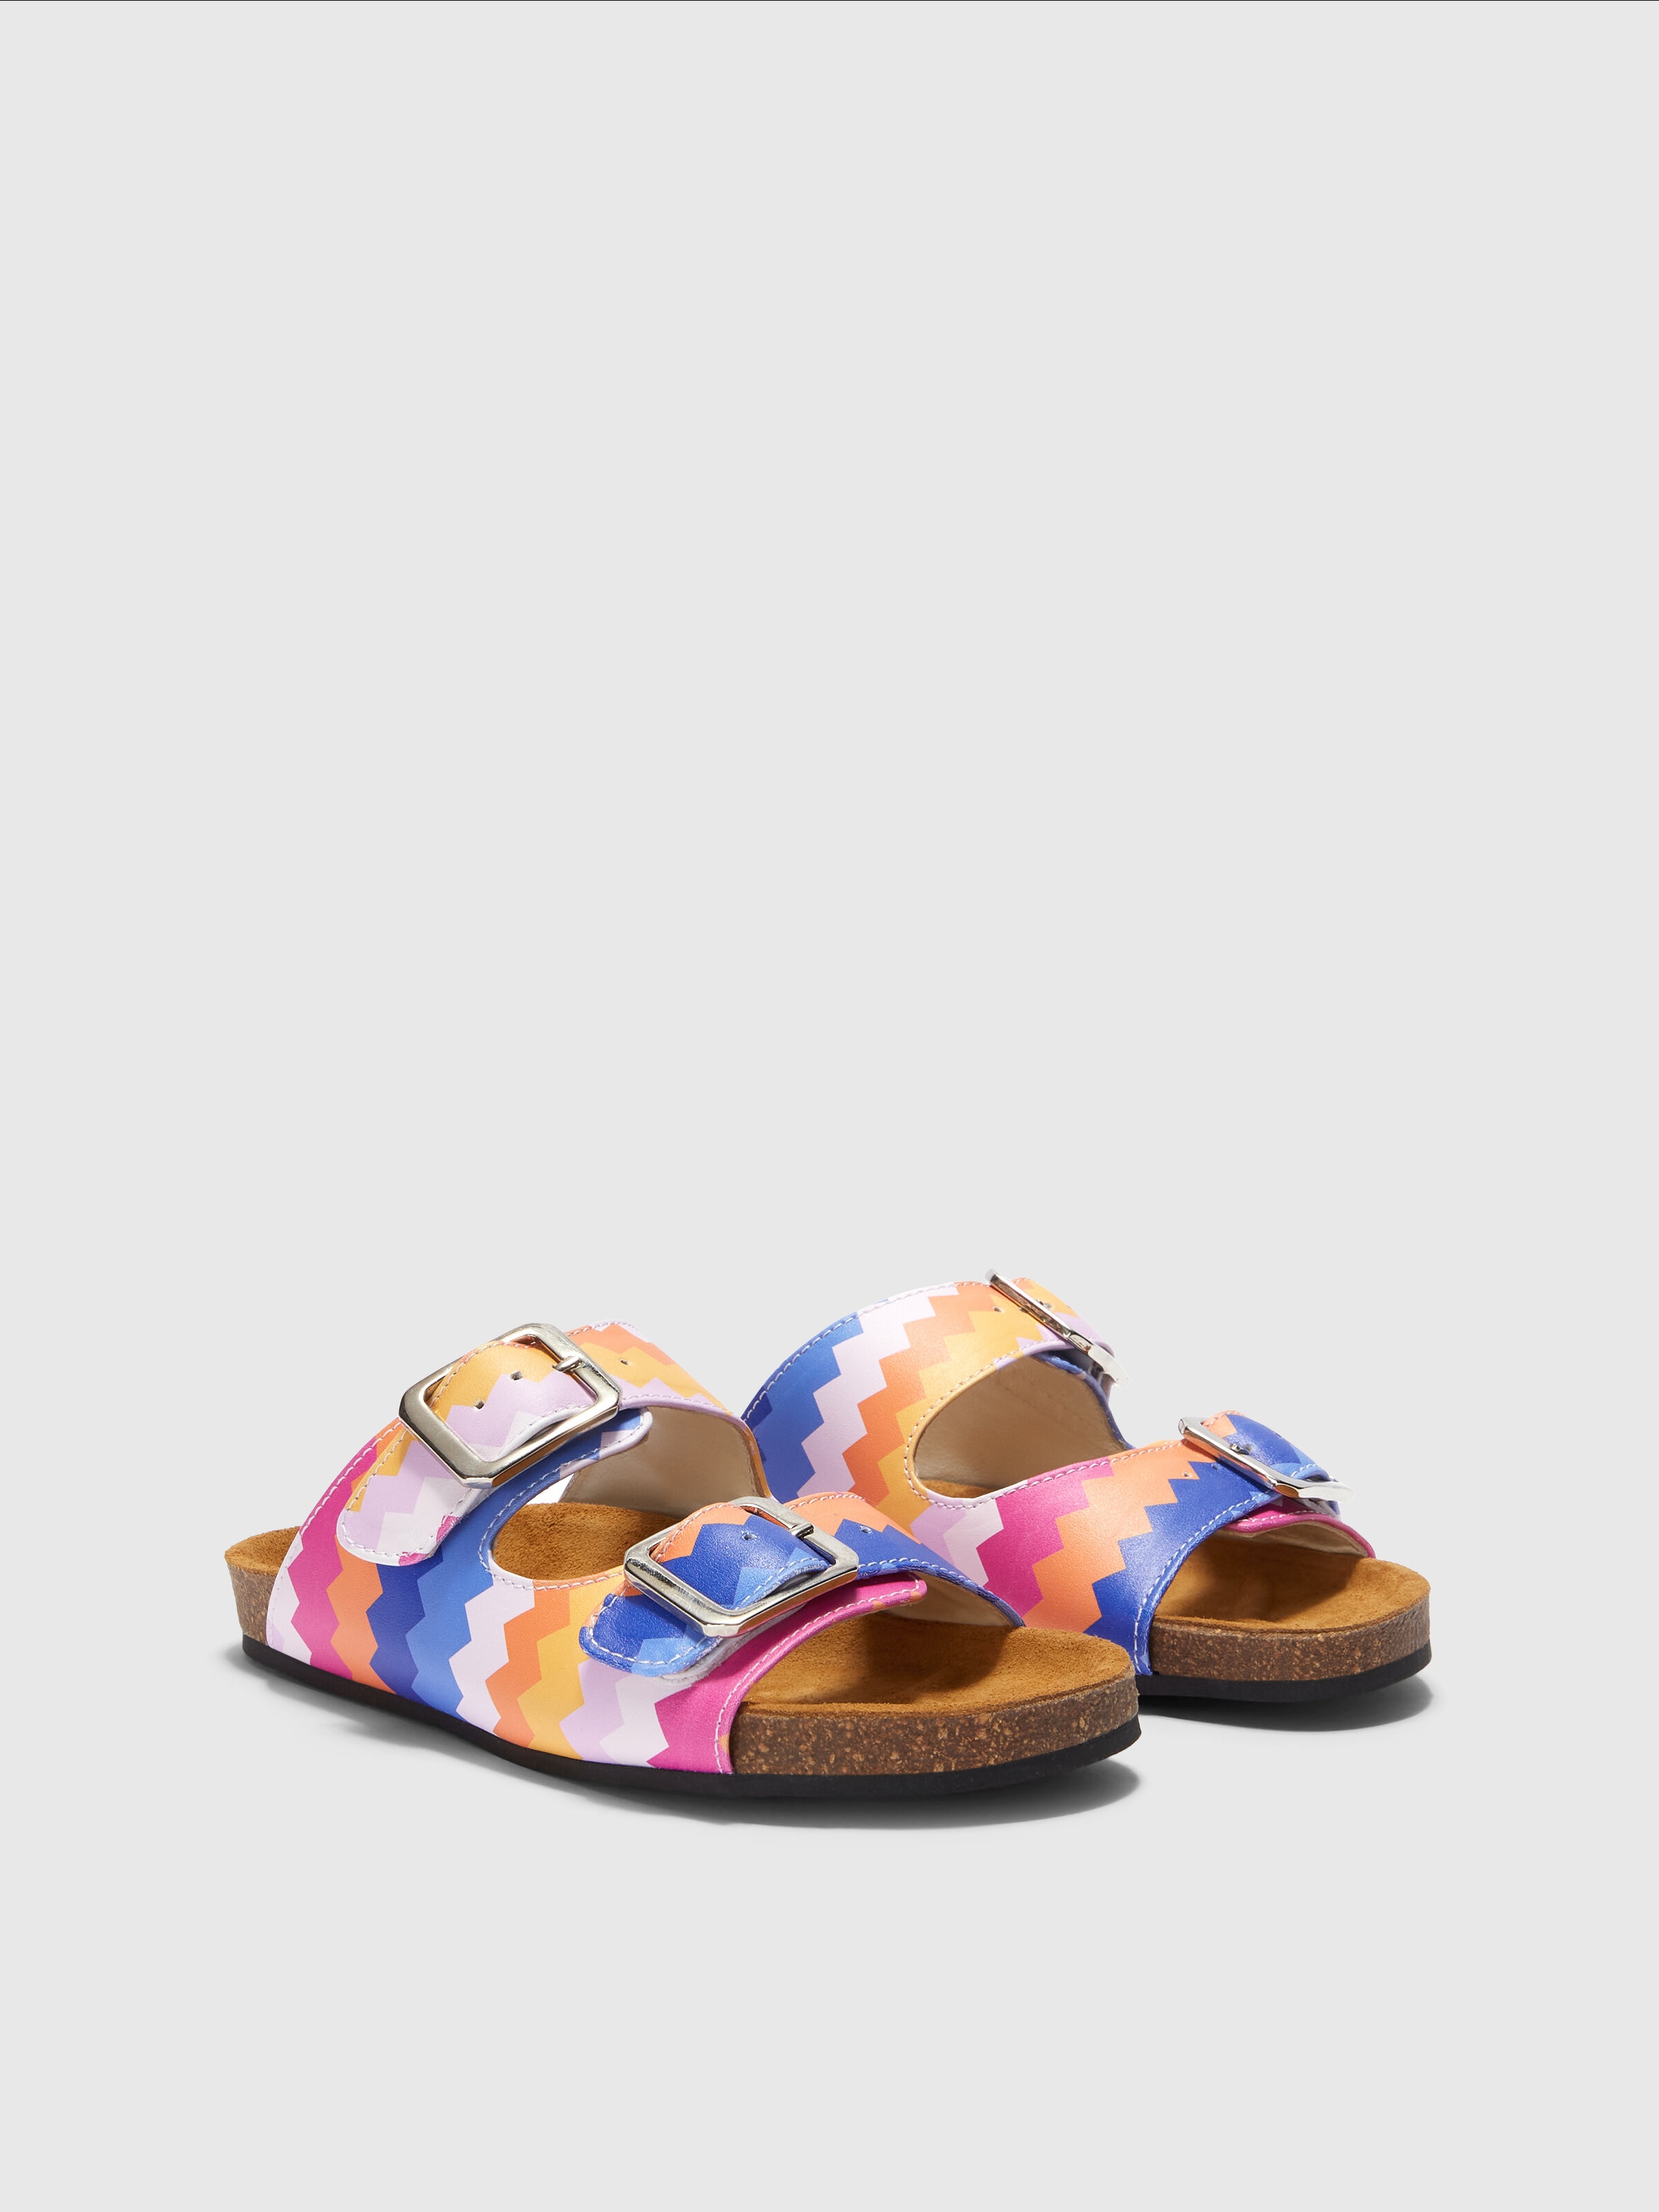 Sandalias con doble tira y motivo de espigas, Multicolor  - 1